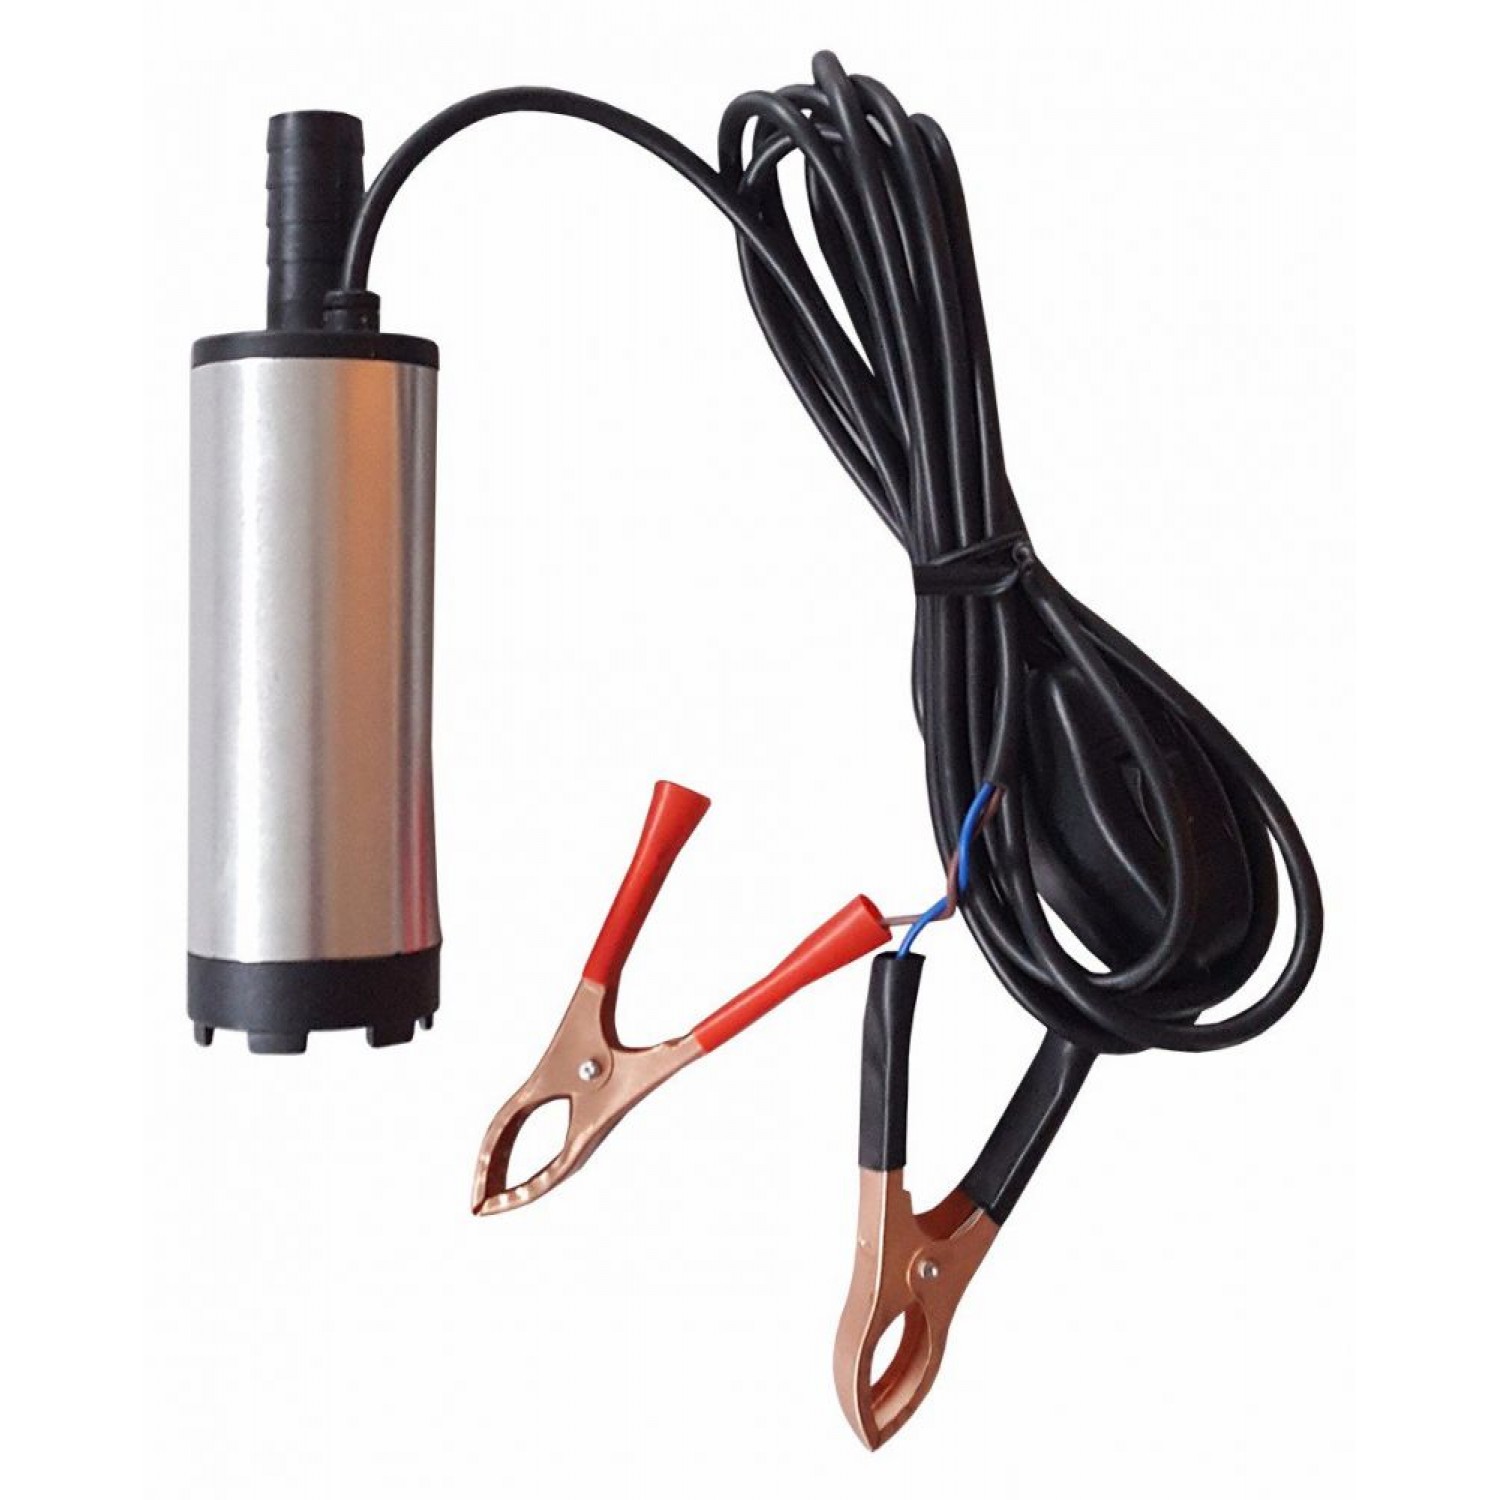 Pompa electrica auto submersibila, pentru transfer combustibil sau lichide Pentru casa